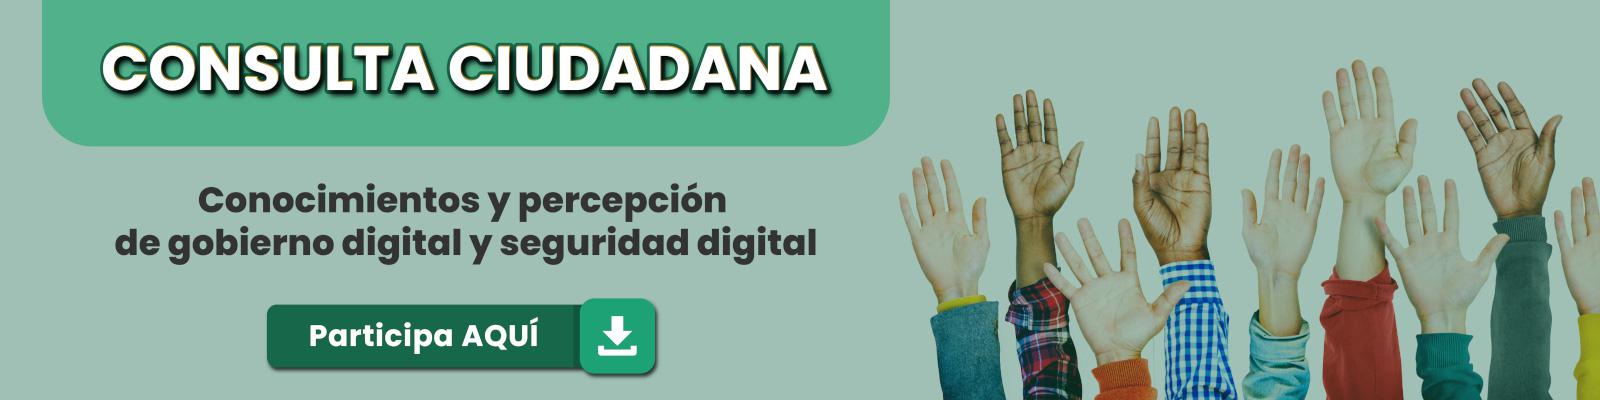 Banner Consulta Ciudadana Conocimientos y percepción de gobierno digital y seguridad digital